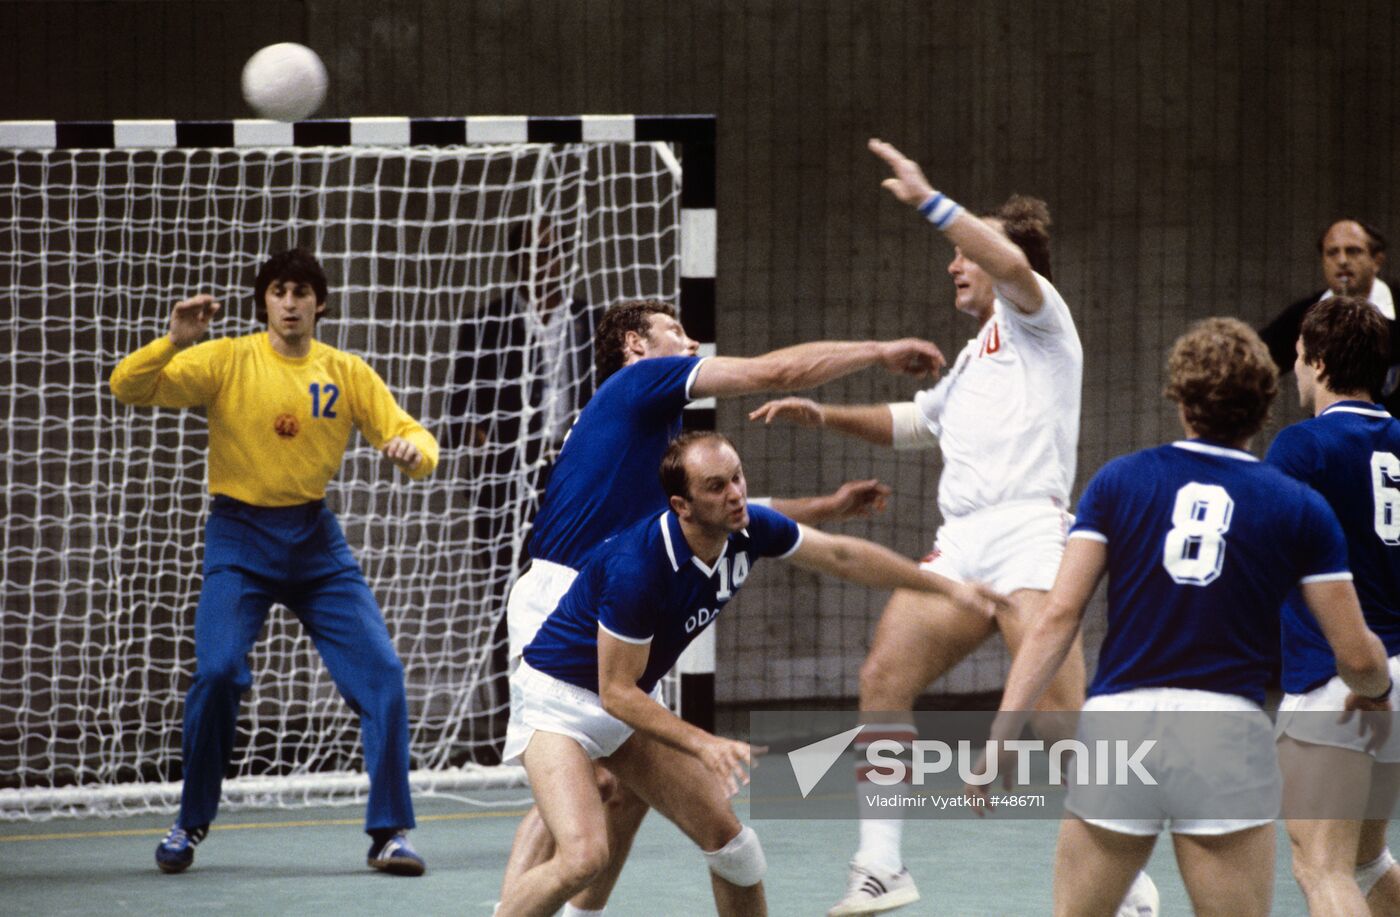 Handball. GDR vs. Hungary